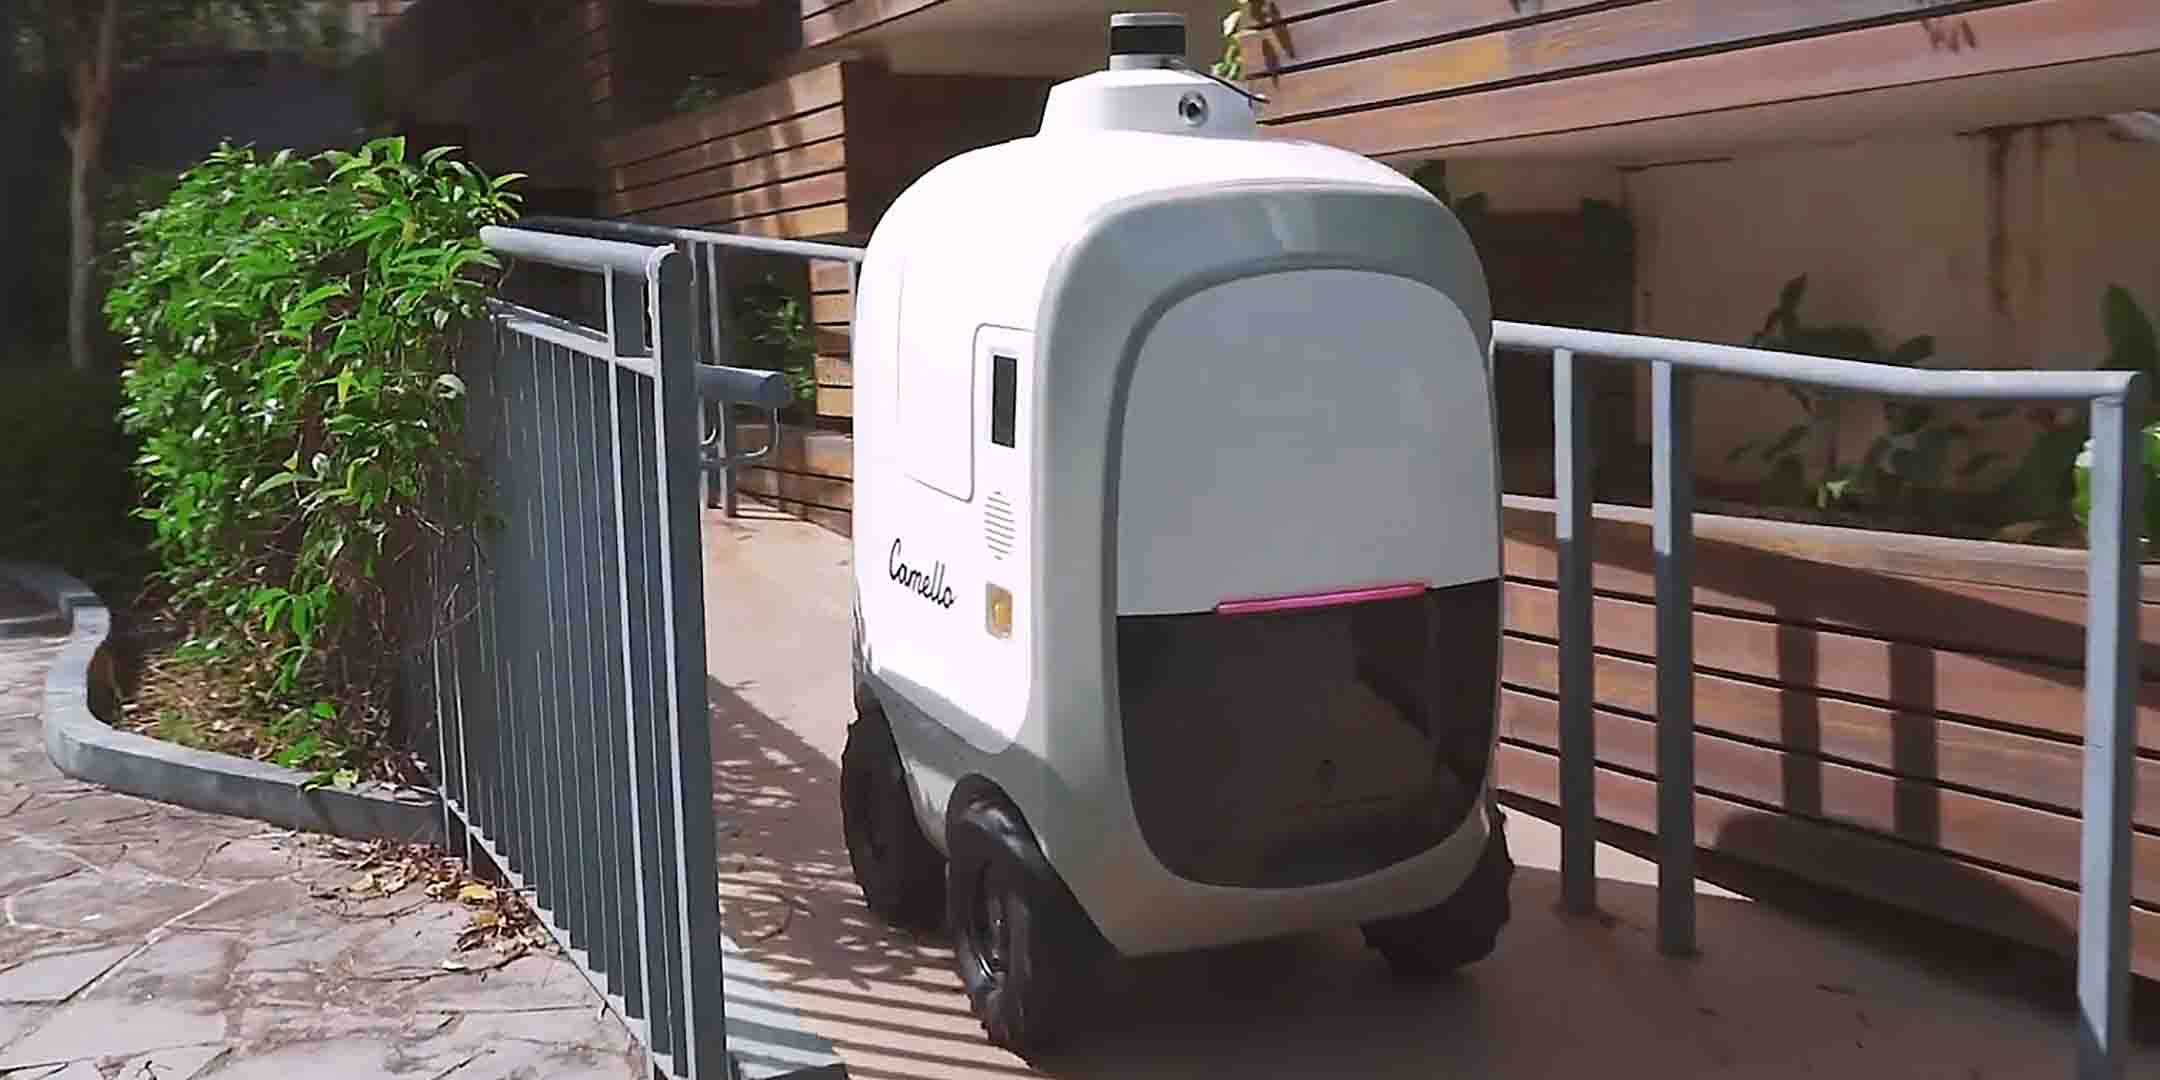 Camello autonomous delivery robot